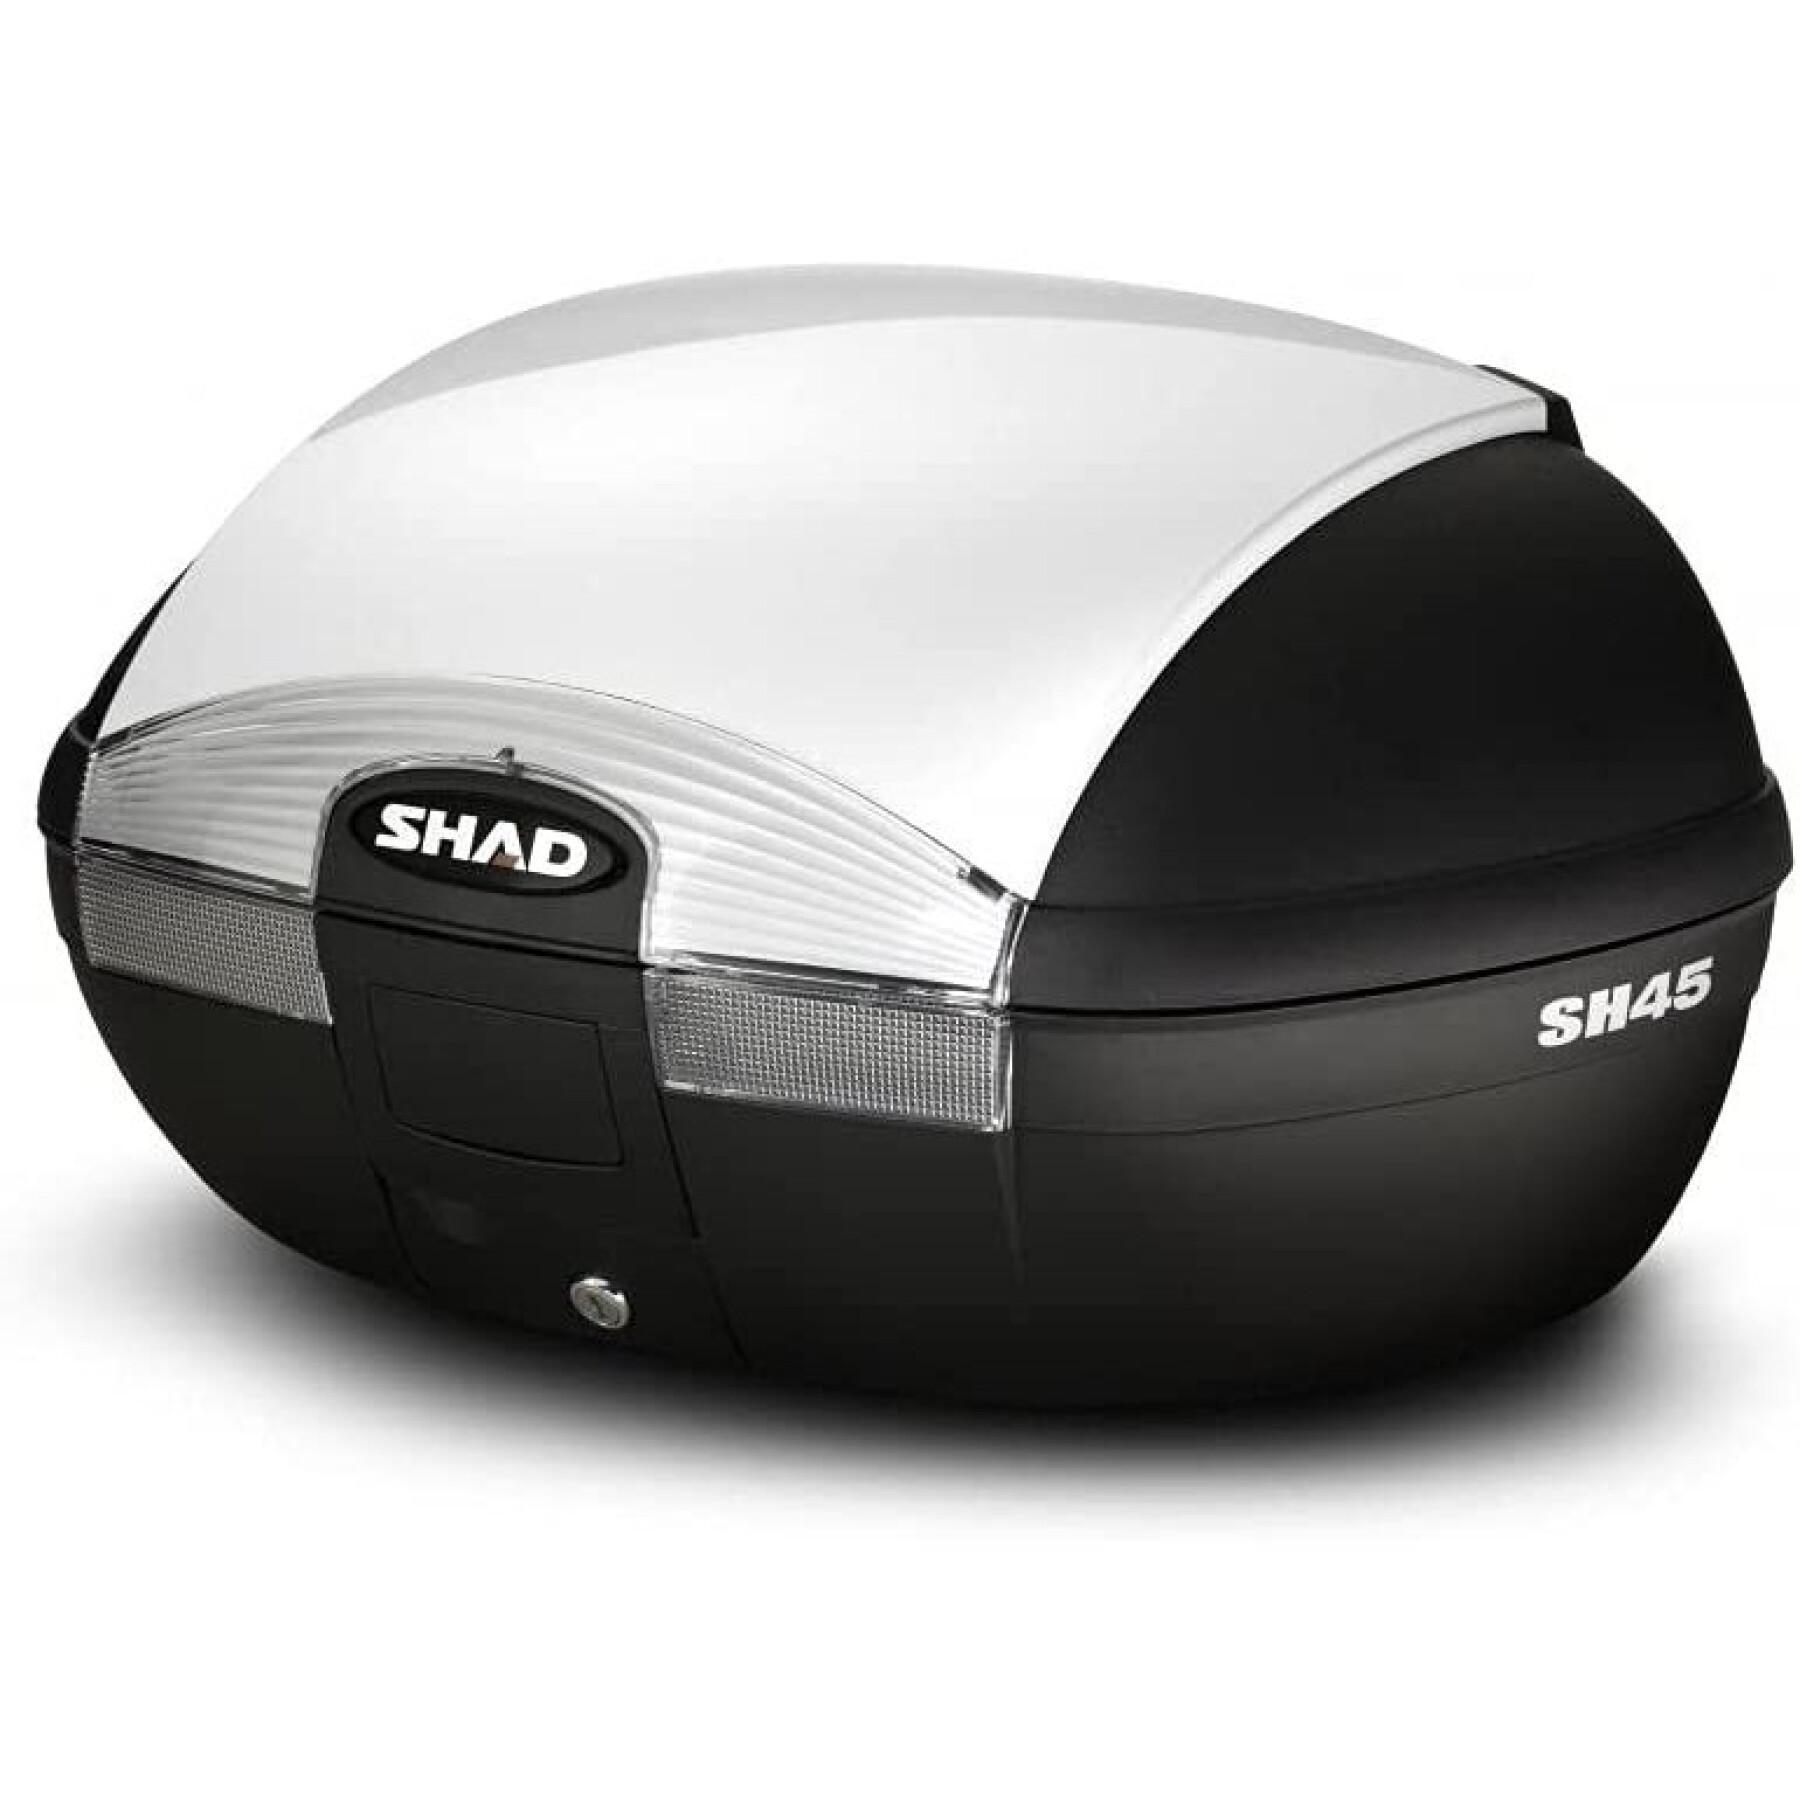 Capa da caixa superior Shad sh45